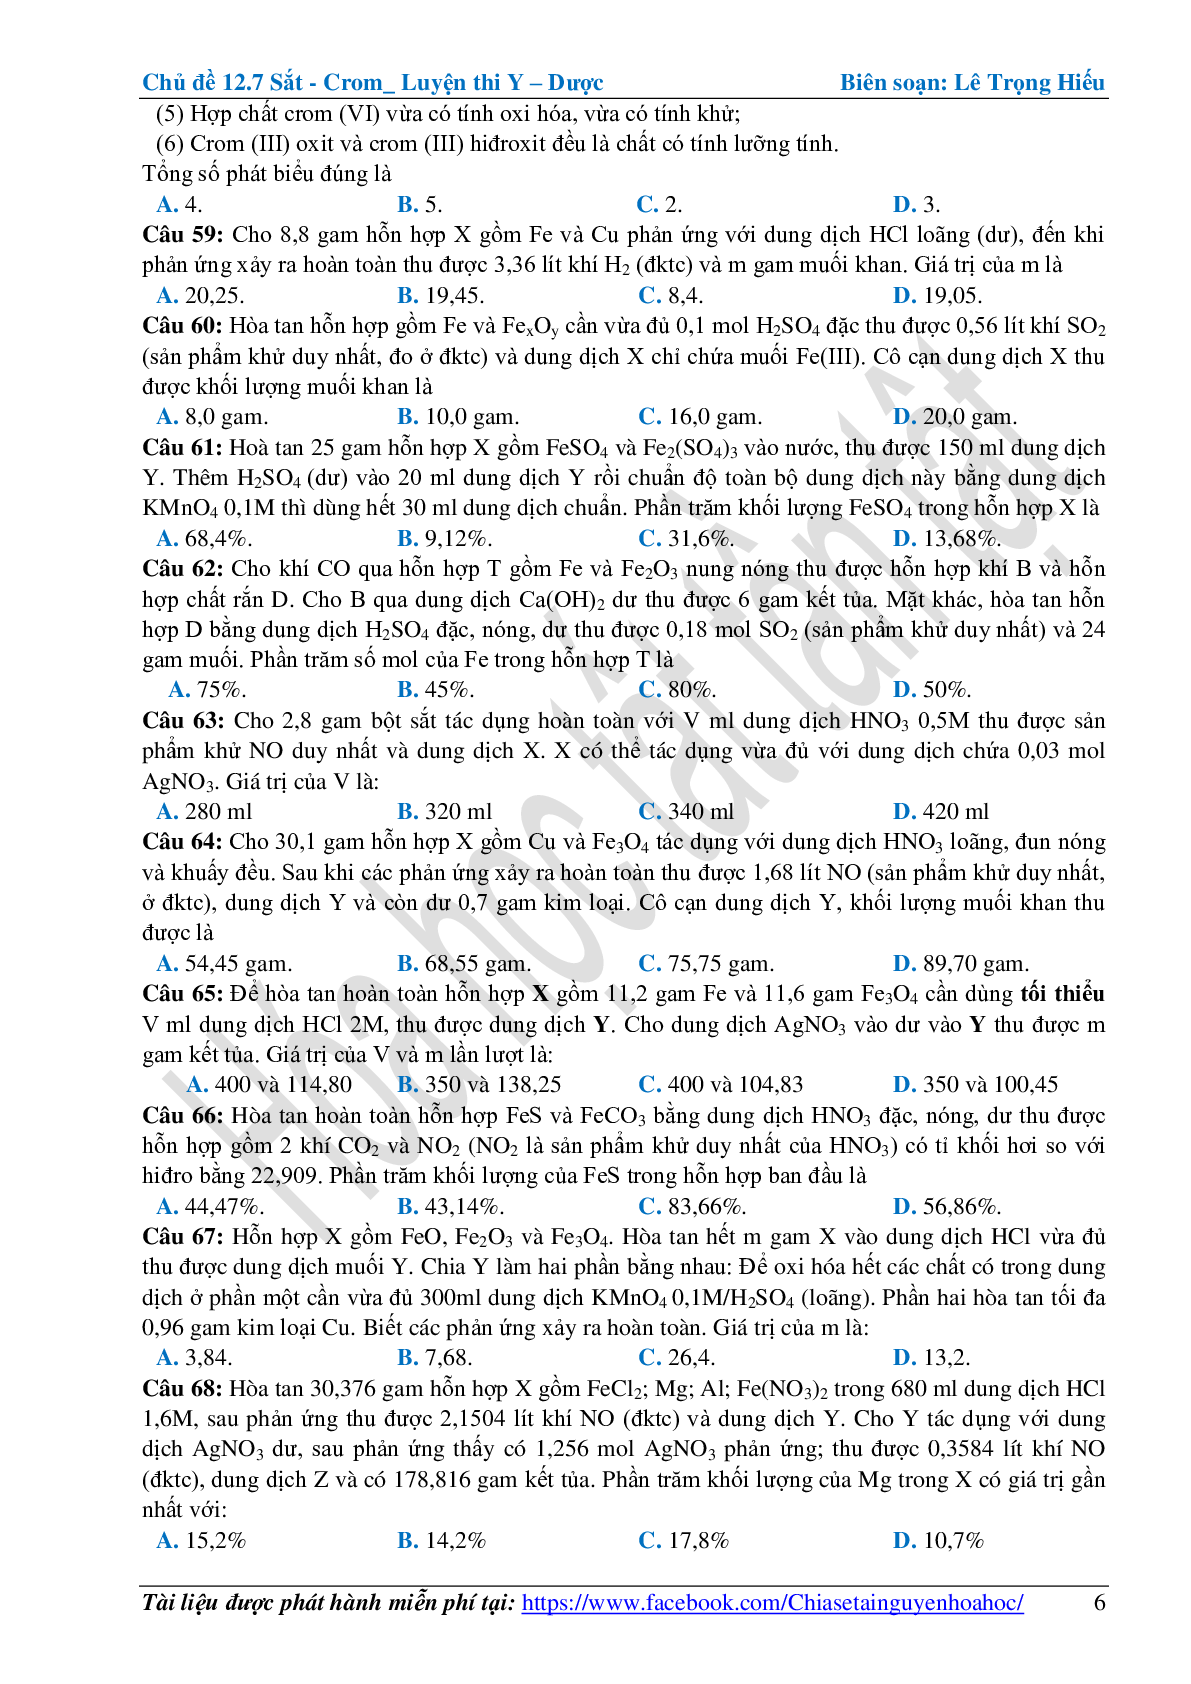 Bài tập về sắt-crom cơ bản, nâng cao (trang 6)